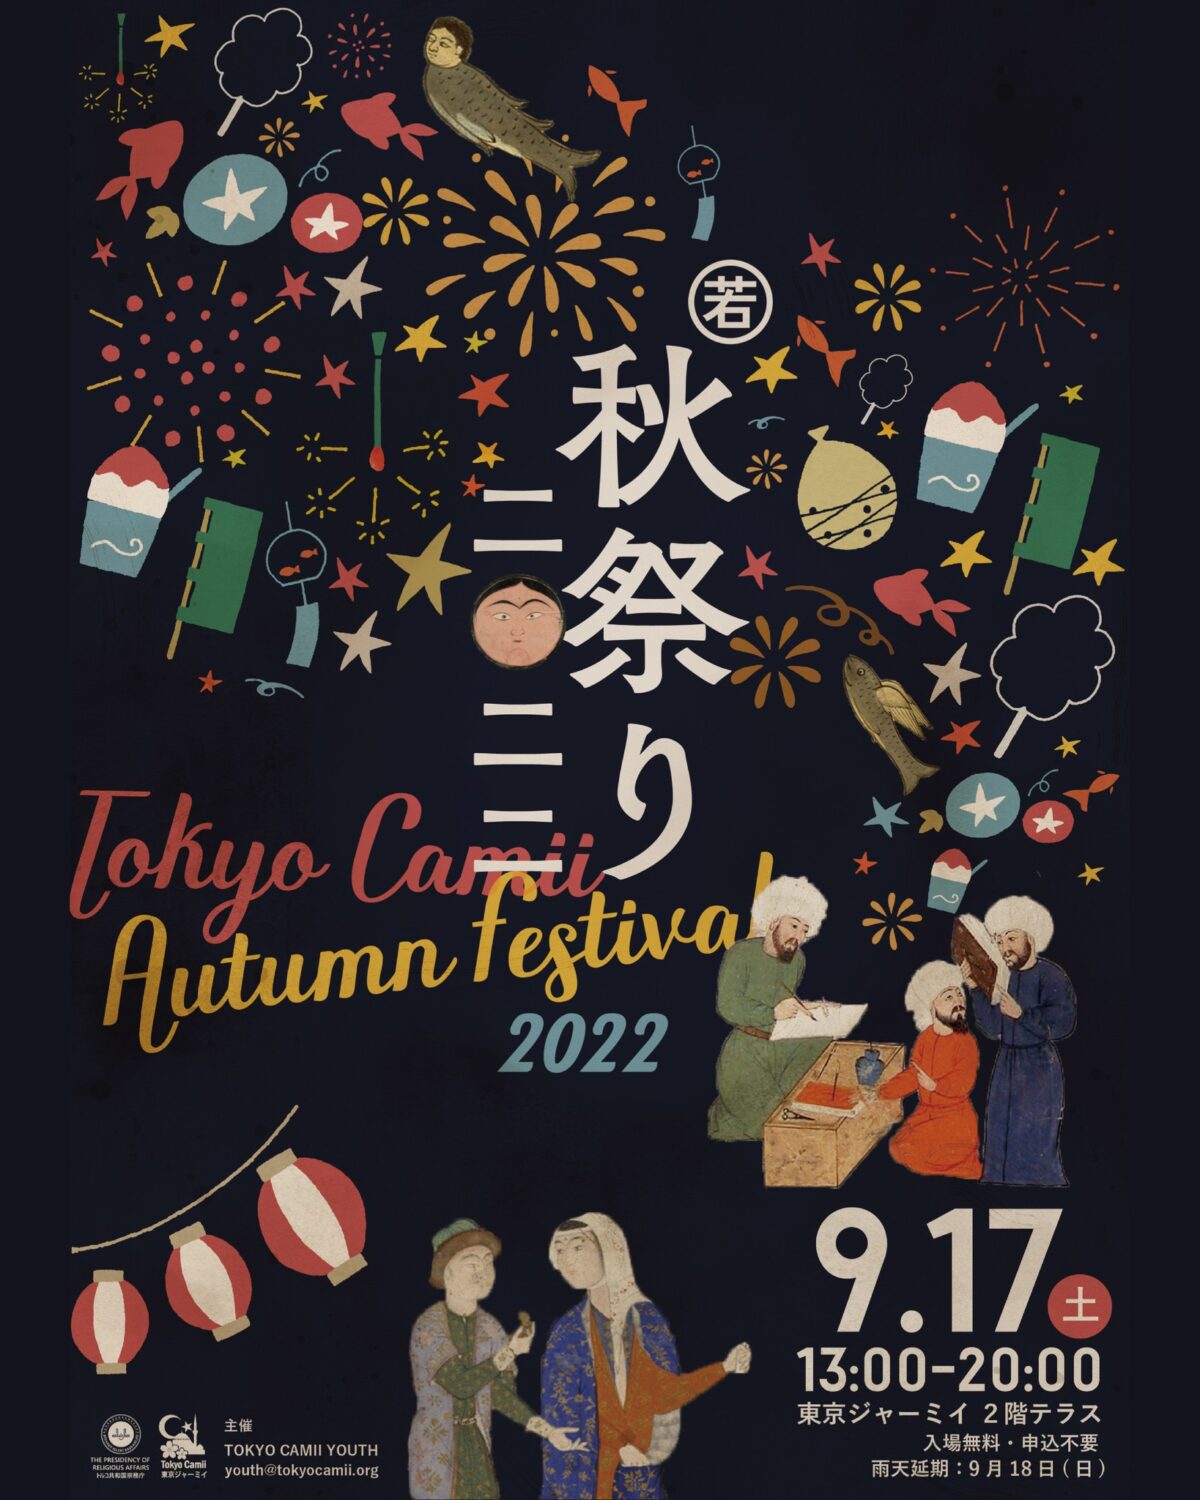 2022年9月17日(土) 秋祭り2022 @ 東京ジャーミイ